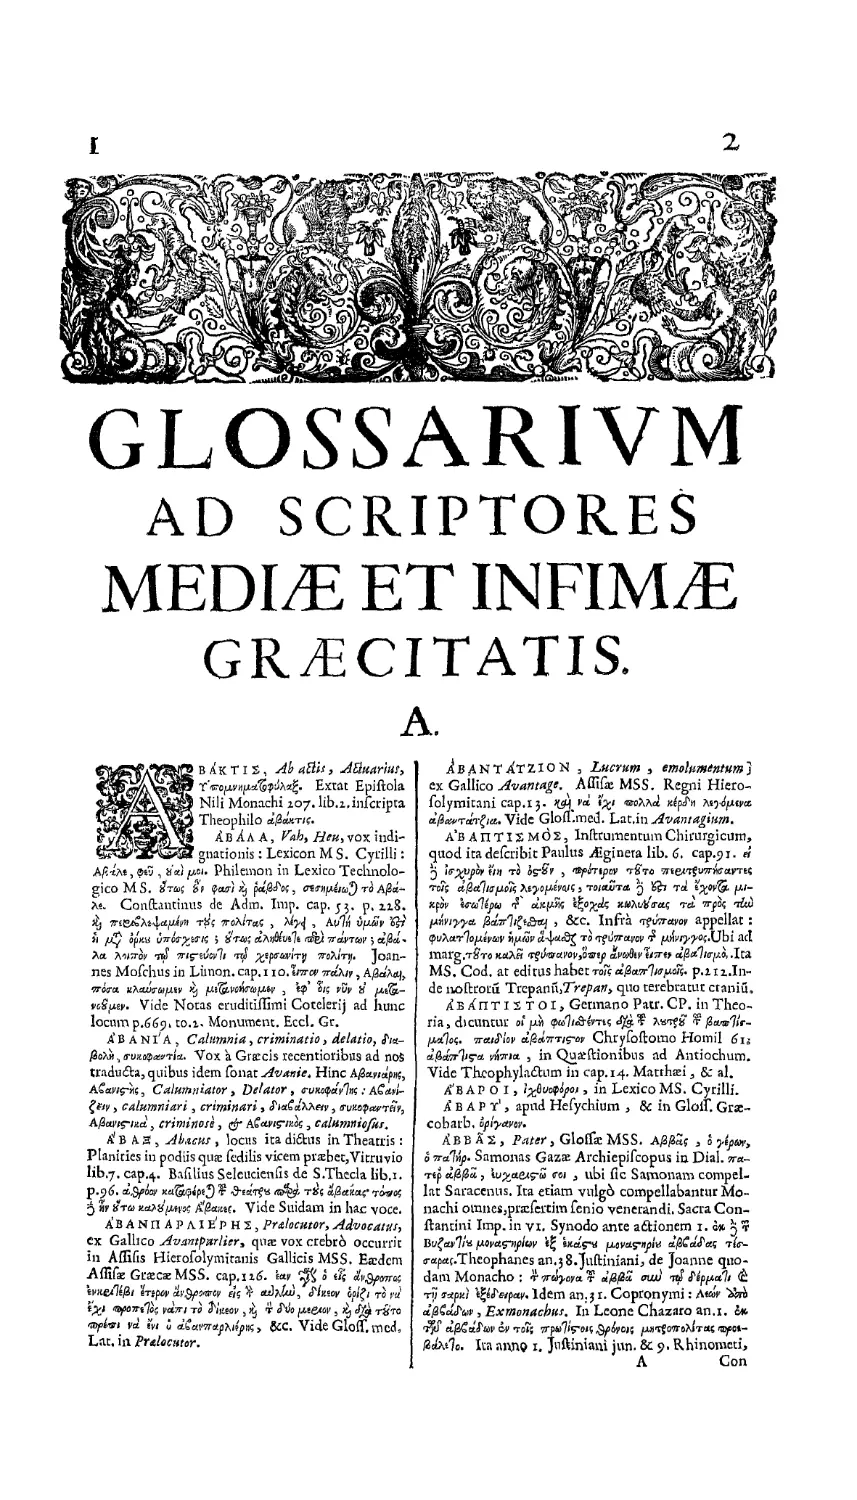 Glossarium ad scriptores mediae et infimae graecitatis
Glossarium ad scriptores mediae et infimae Graecitatis